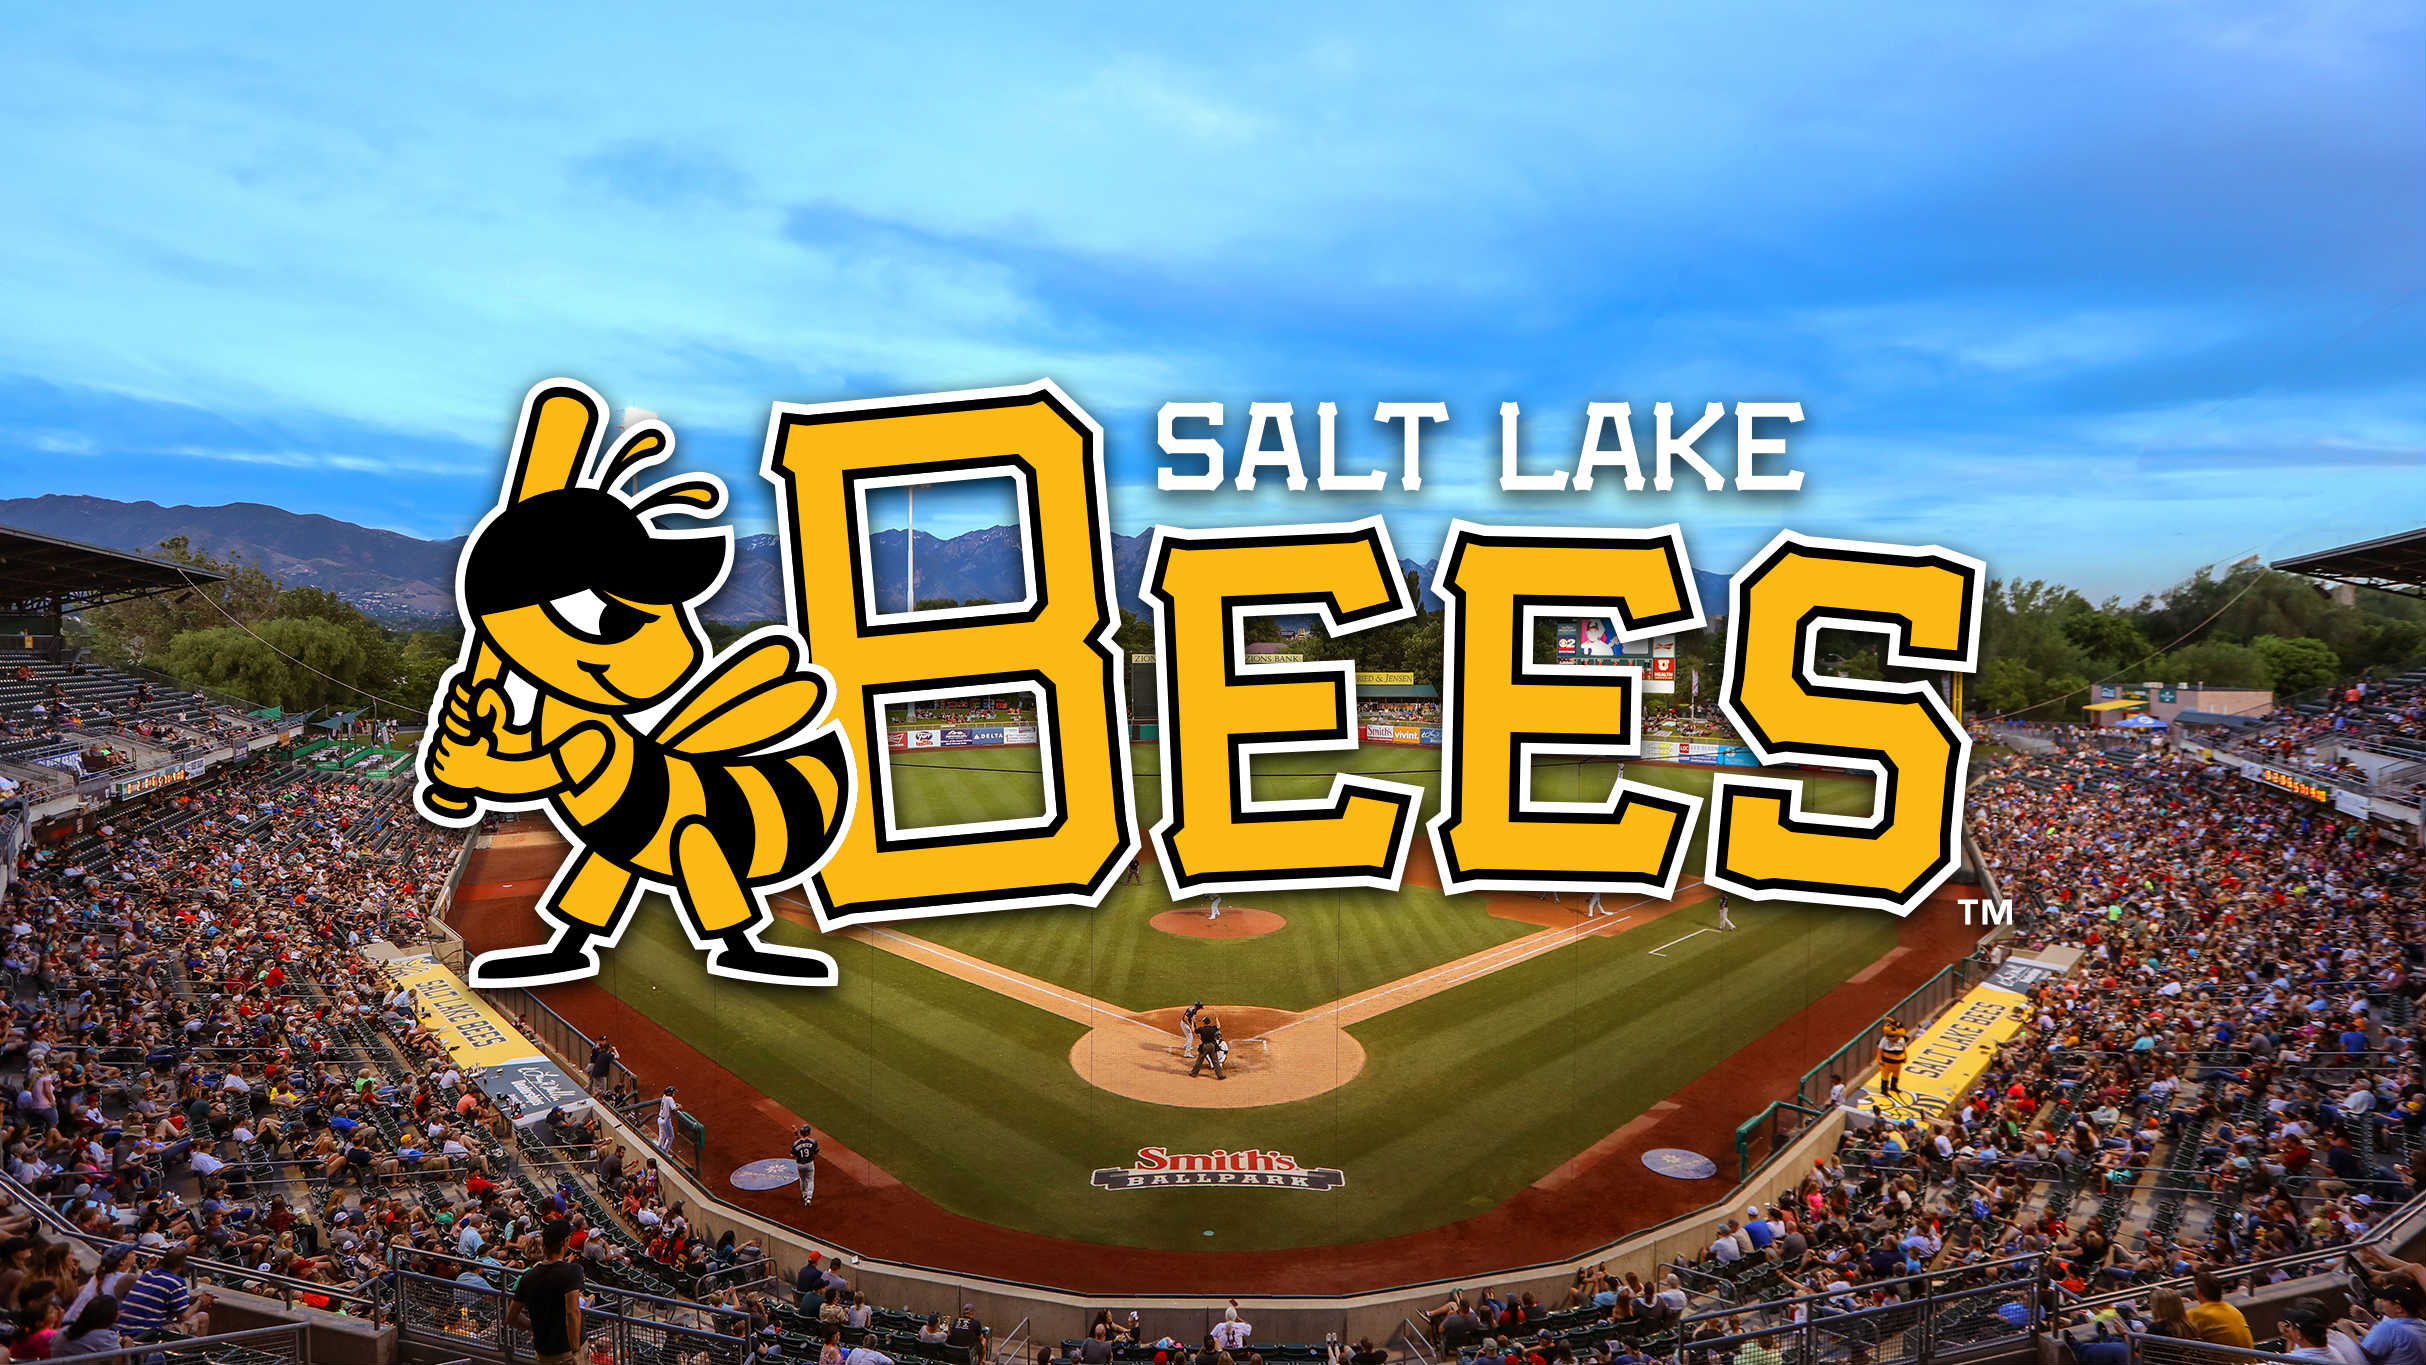 Salt Lake Bees vs. Albuquerque Isotopes at Smith's Ballpark